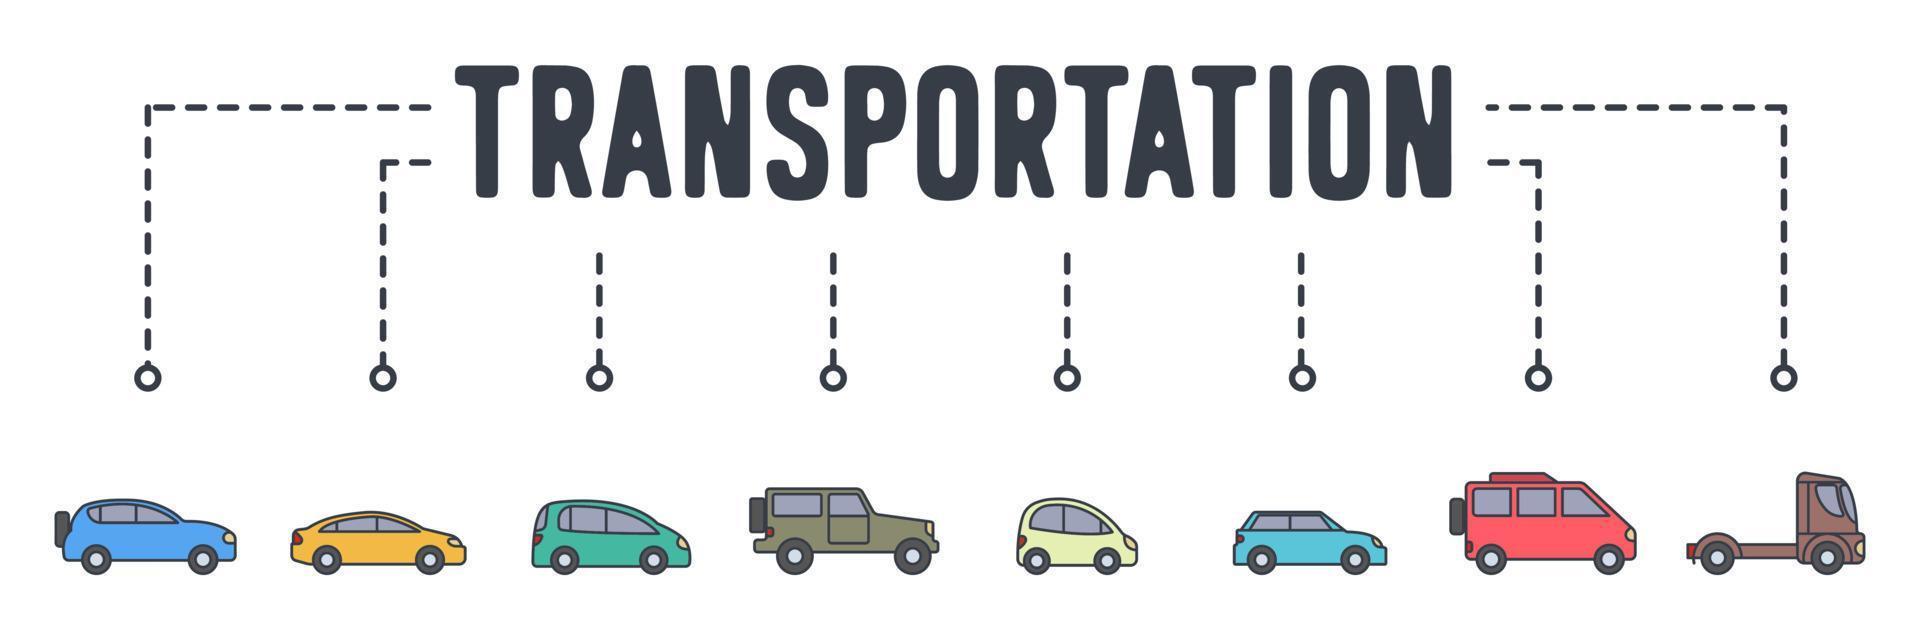 carro transporte bandeira web ícone ilustração vetorial conceito. vetor